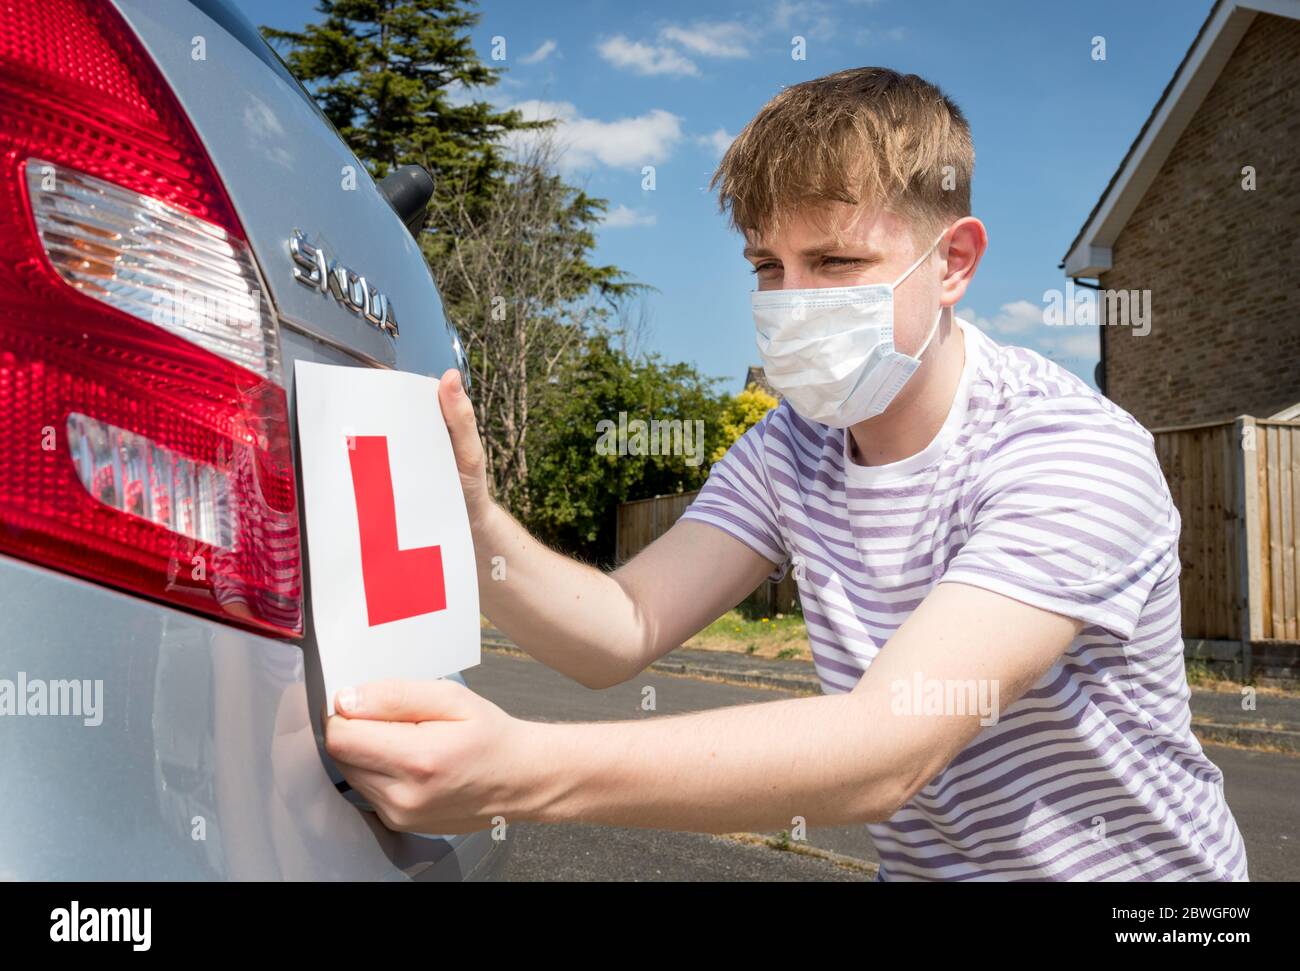 L'adolescent conducteur a portant un masque facial en raison de la pandémie du coronavirus attendant de commencer sa leçon de conduite. Banque D'Images